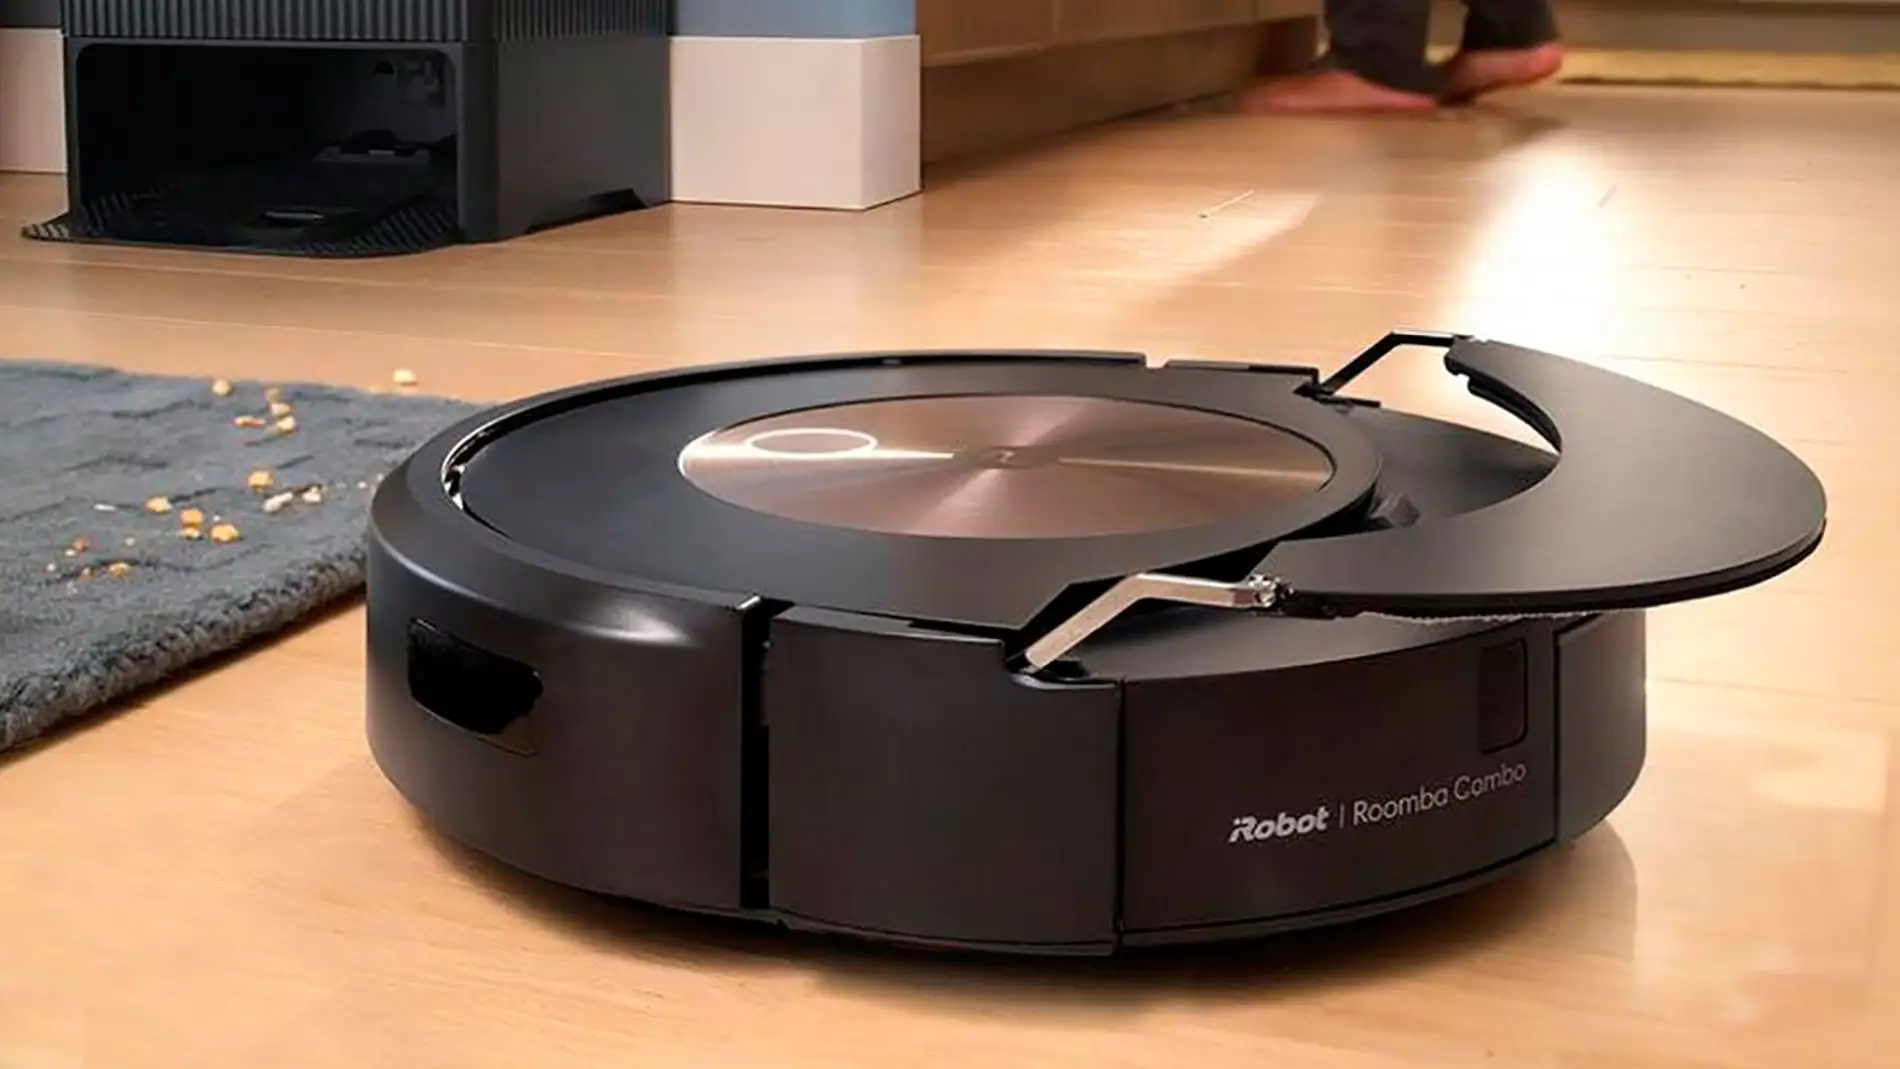 Robot aspirador  iRobot Roomba Combo i8, Robot aspirador y